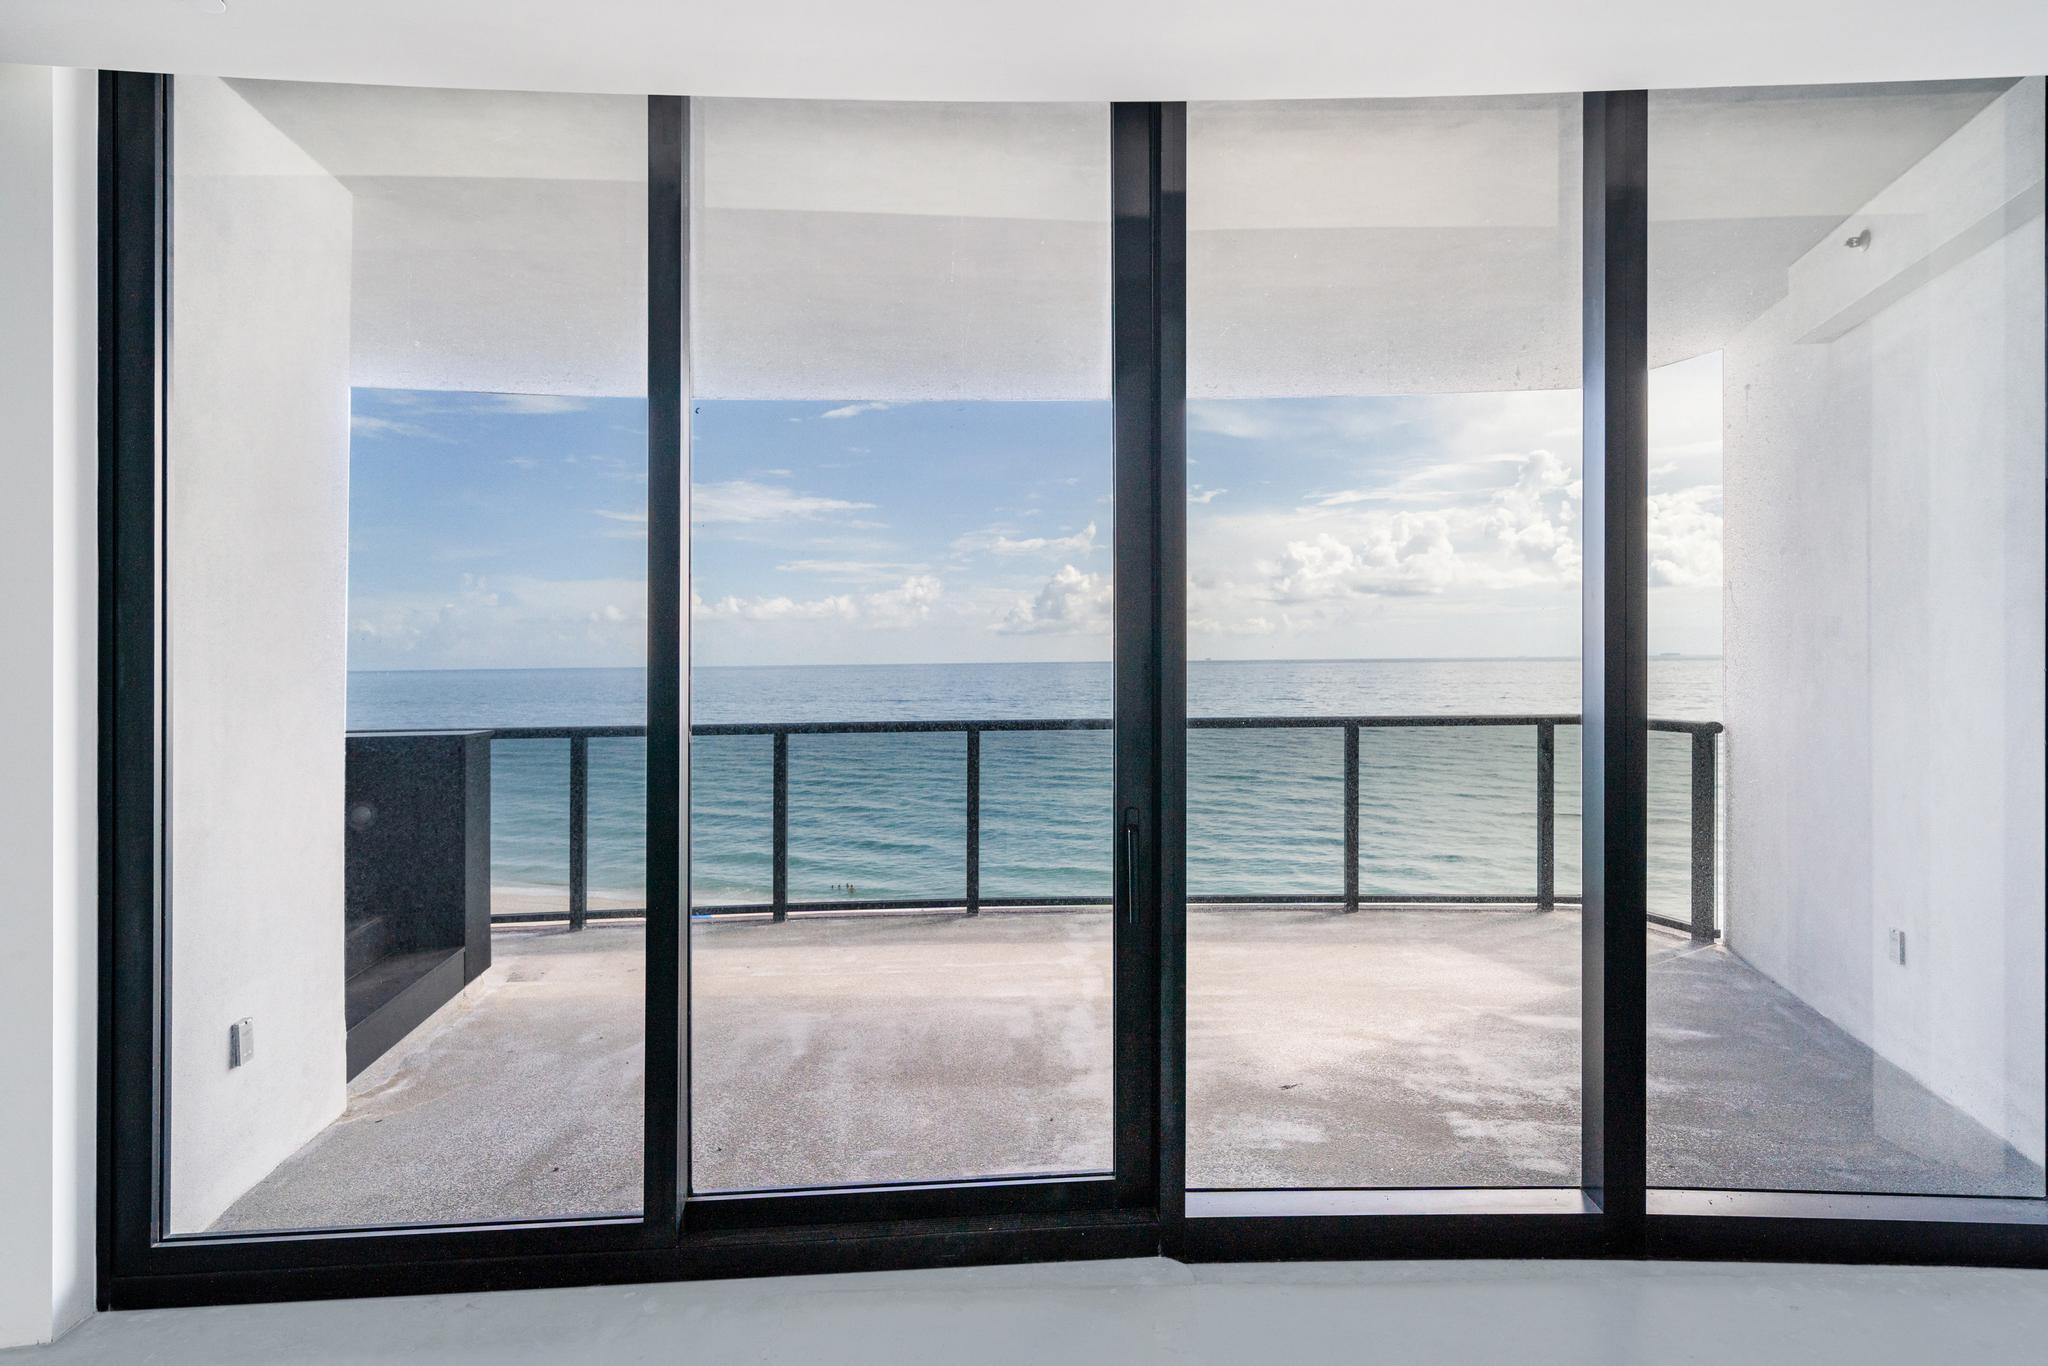 Daniel Goodstadt Presents A Stunning Oceanfront Apartment At Porsche Design Tower